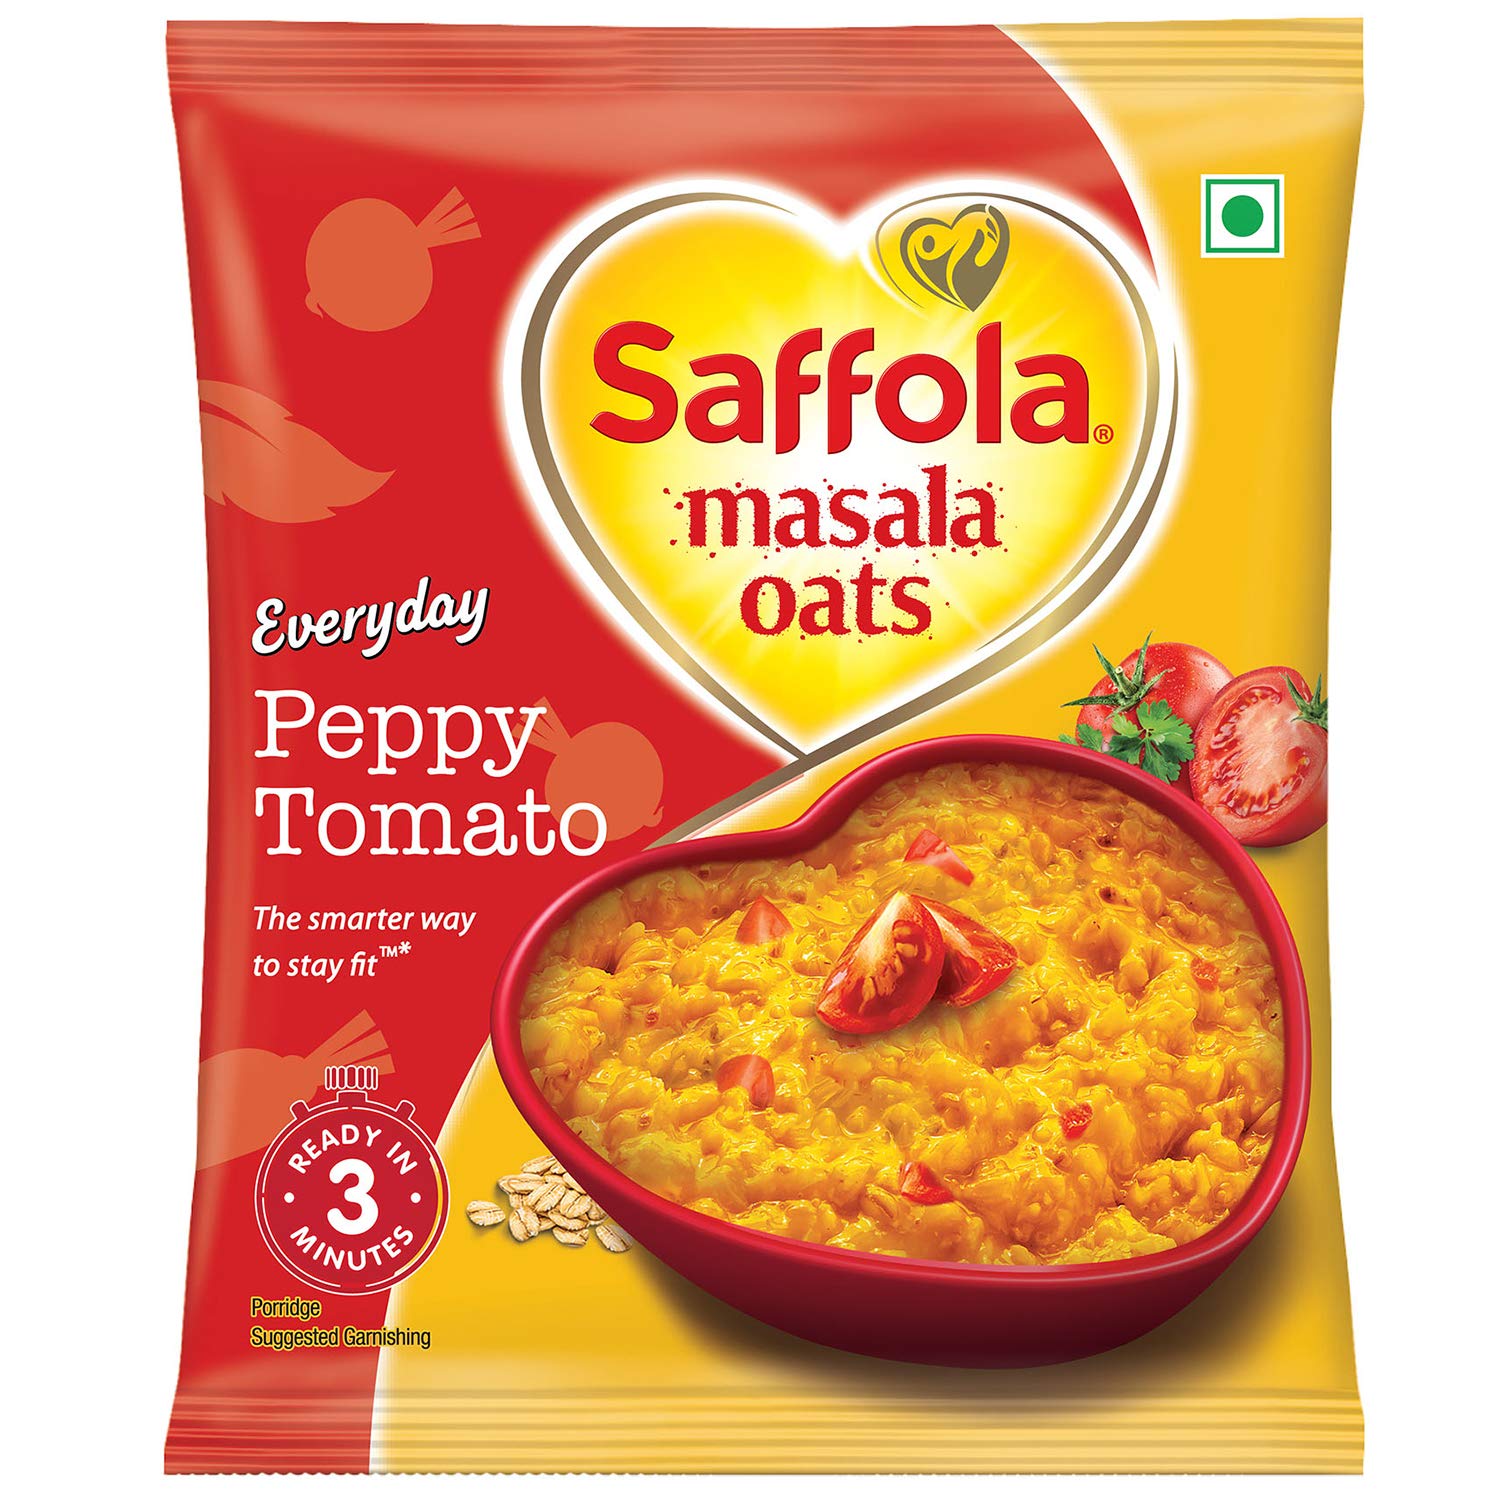 Saffola Masala Oats Peppy Tomato